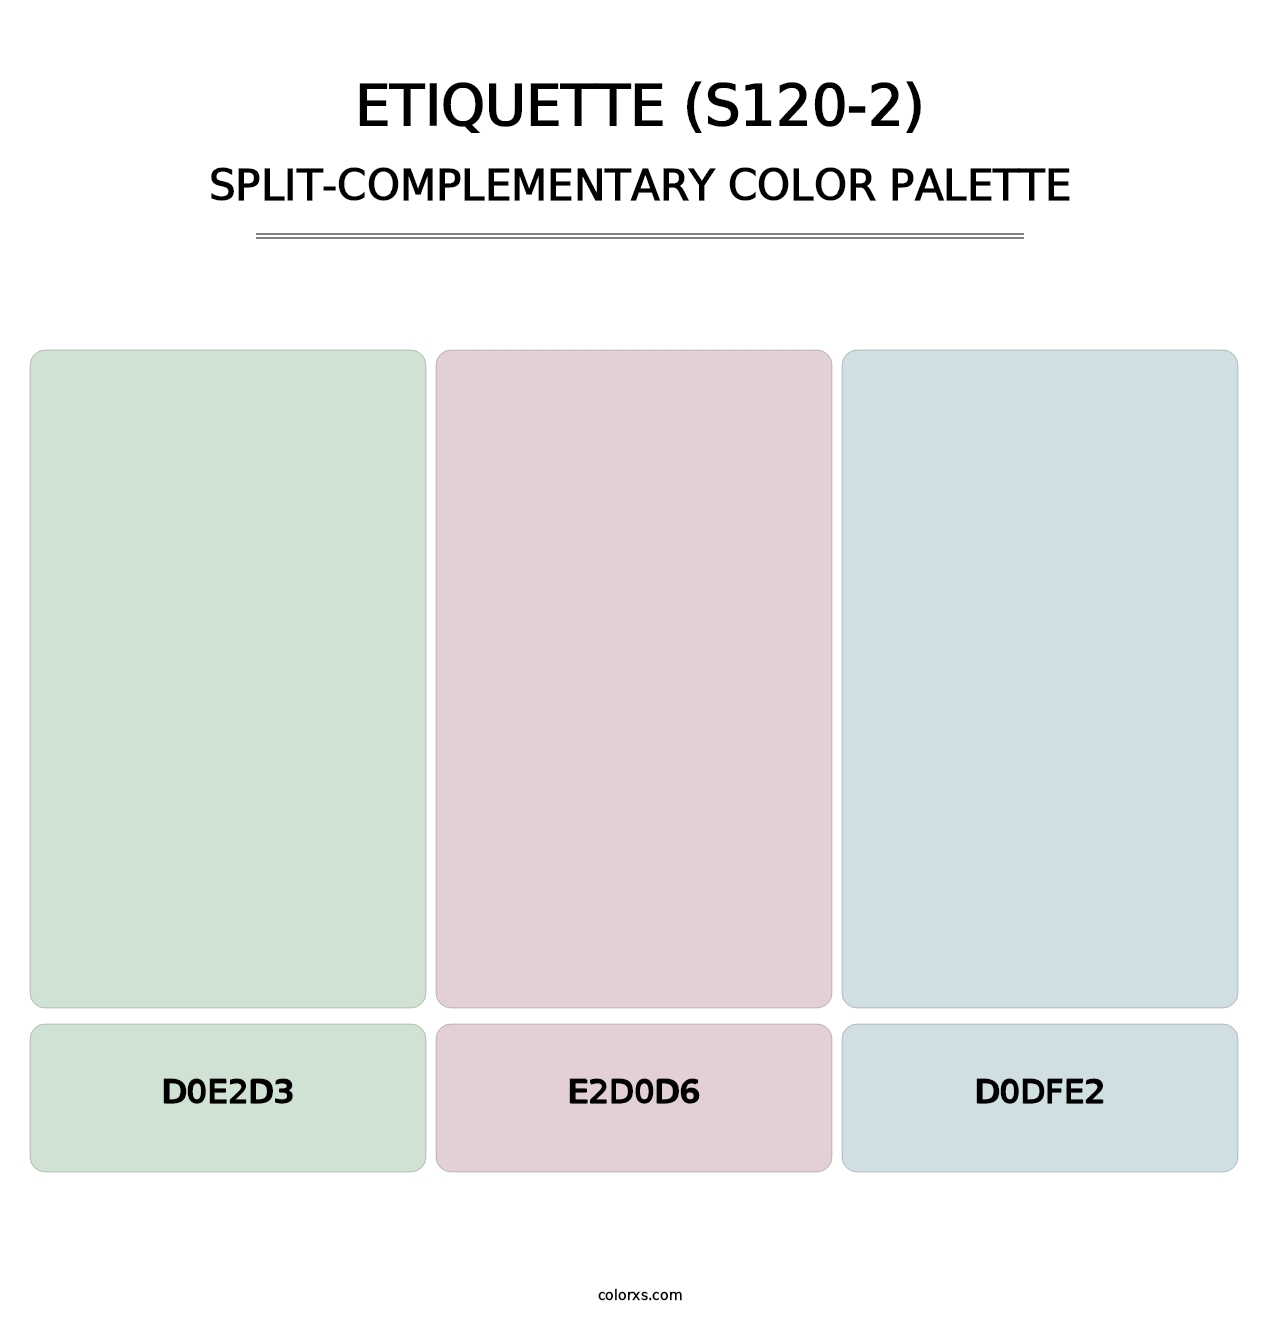 Etiquette (S120-2) - Split-Complementary Color Palette